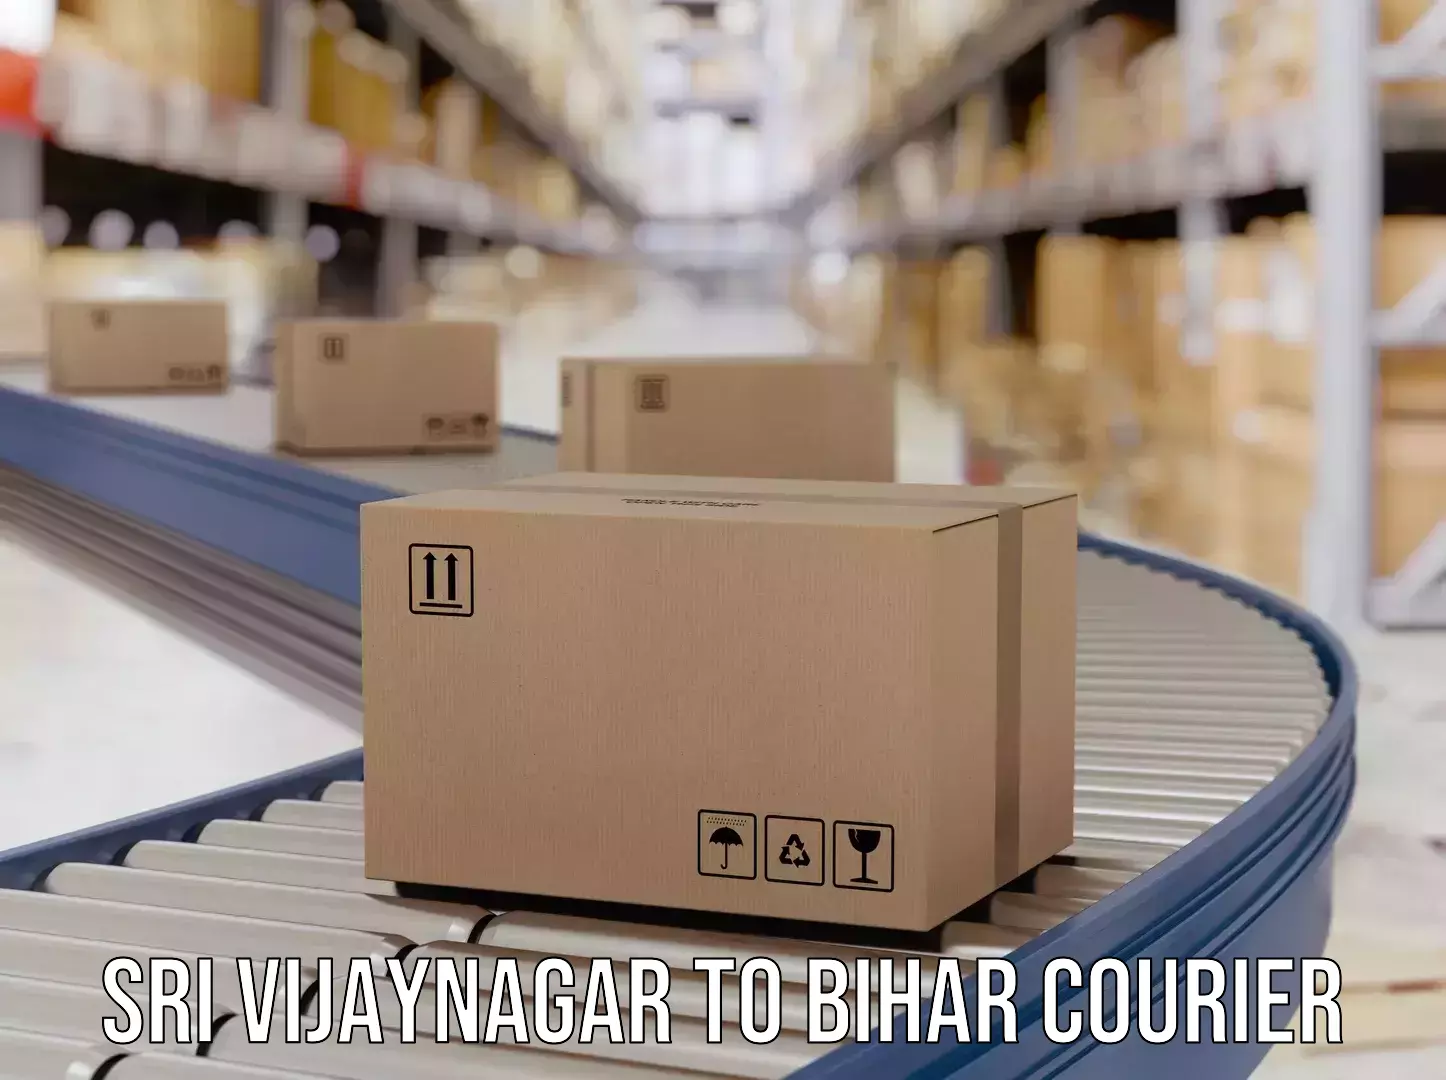 Cash on delivery service Sri Vijaynagar to Sonbarsa